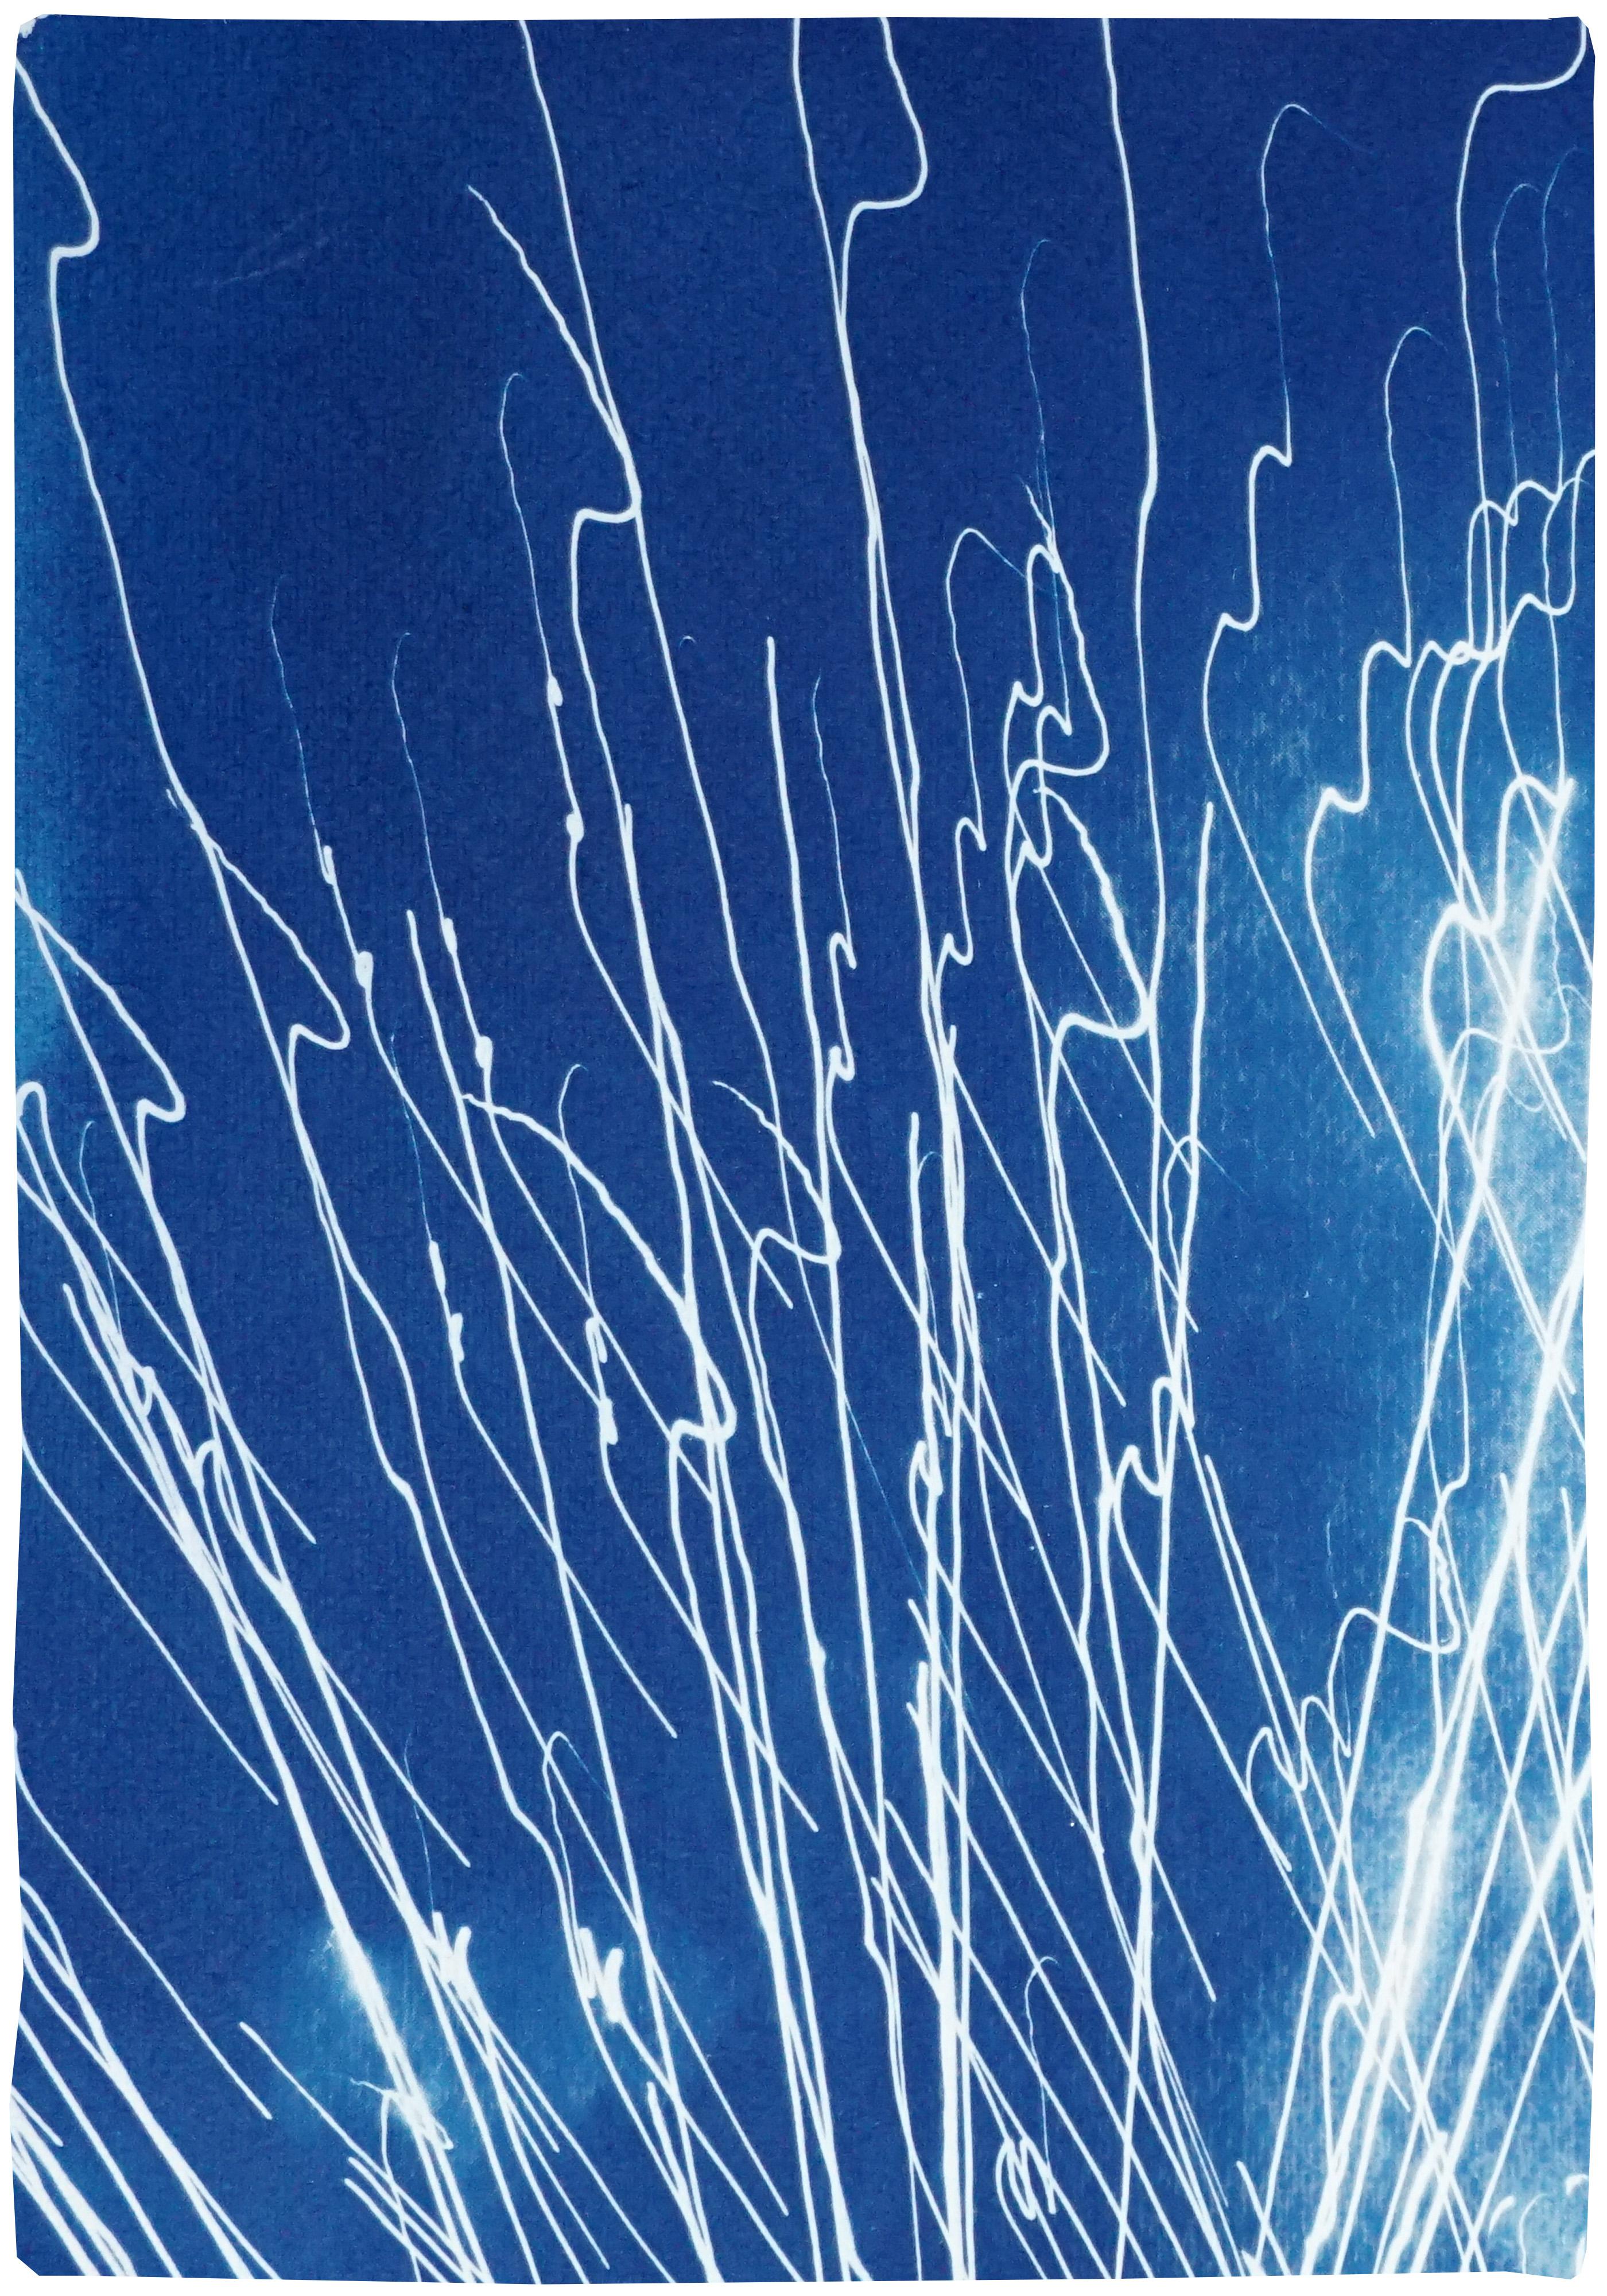 Diptyque Fireworks Lights in Sky Blue, cyanotype fait à la main sur papier aquarelle,  - Bleu Landscape Print par Kind of Cyan